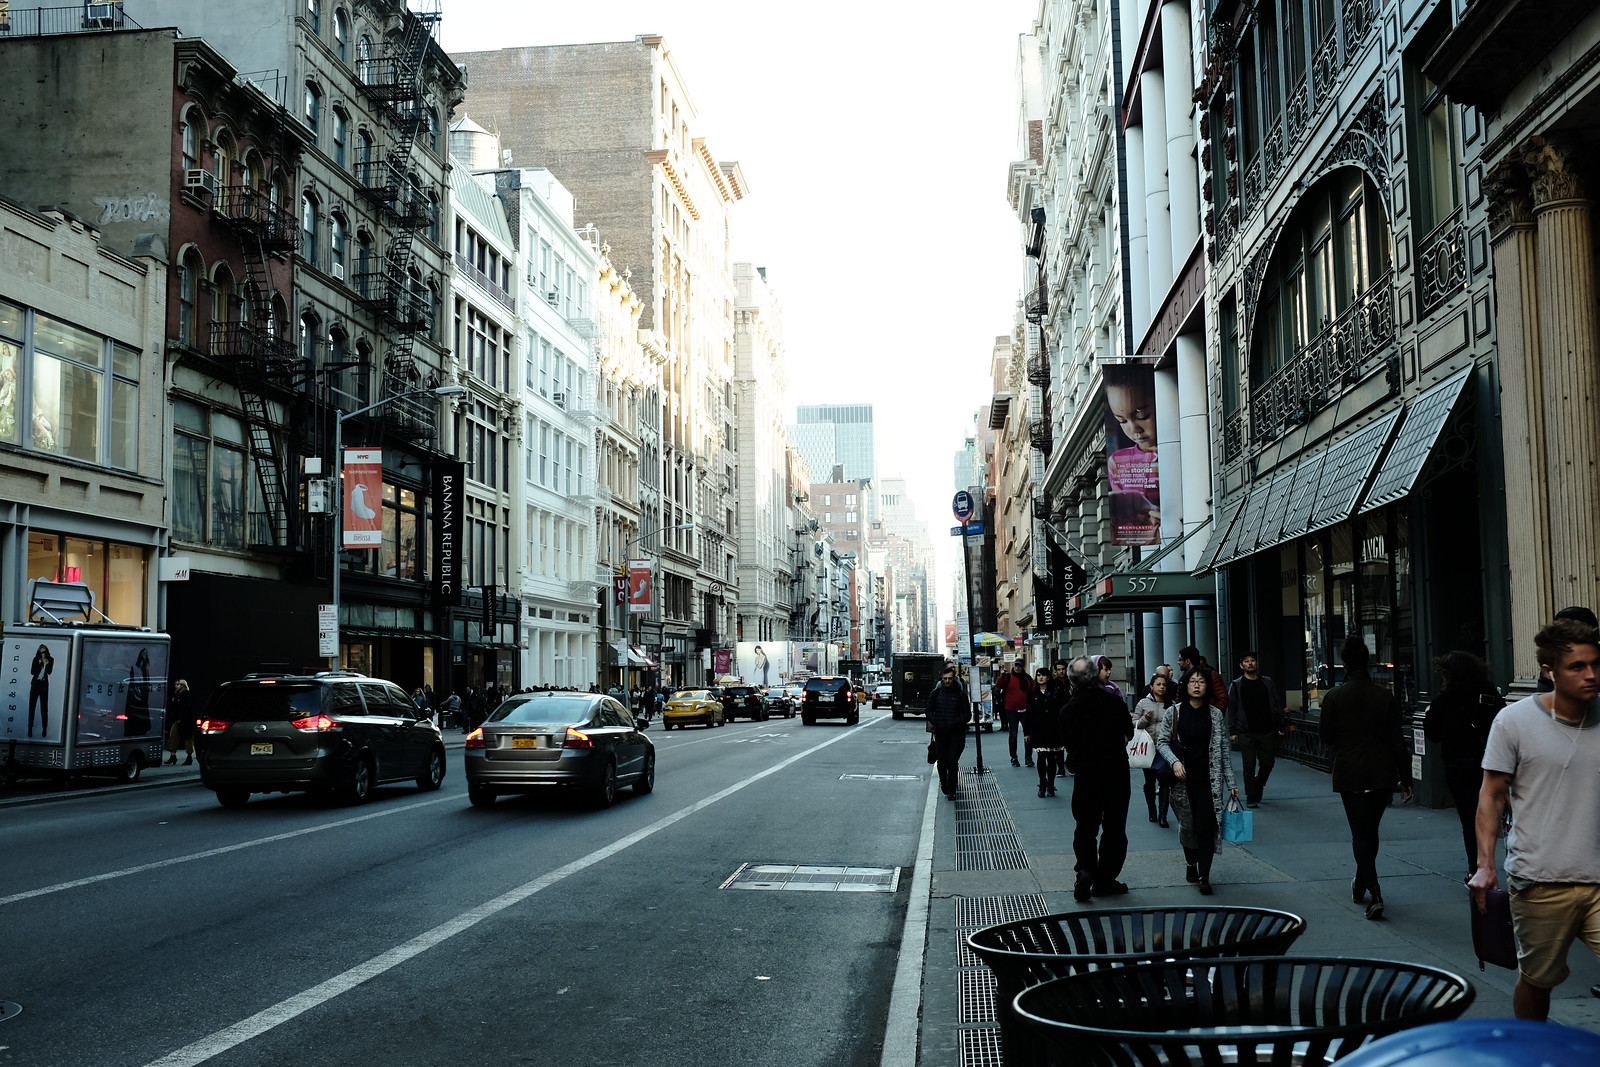 The New York Soho photo by FUJIFILM X100S.